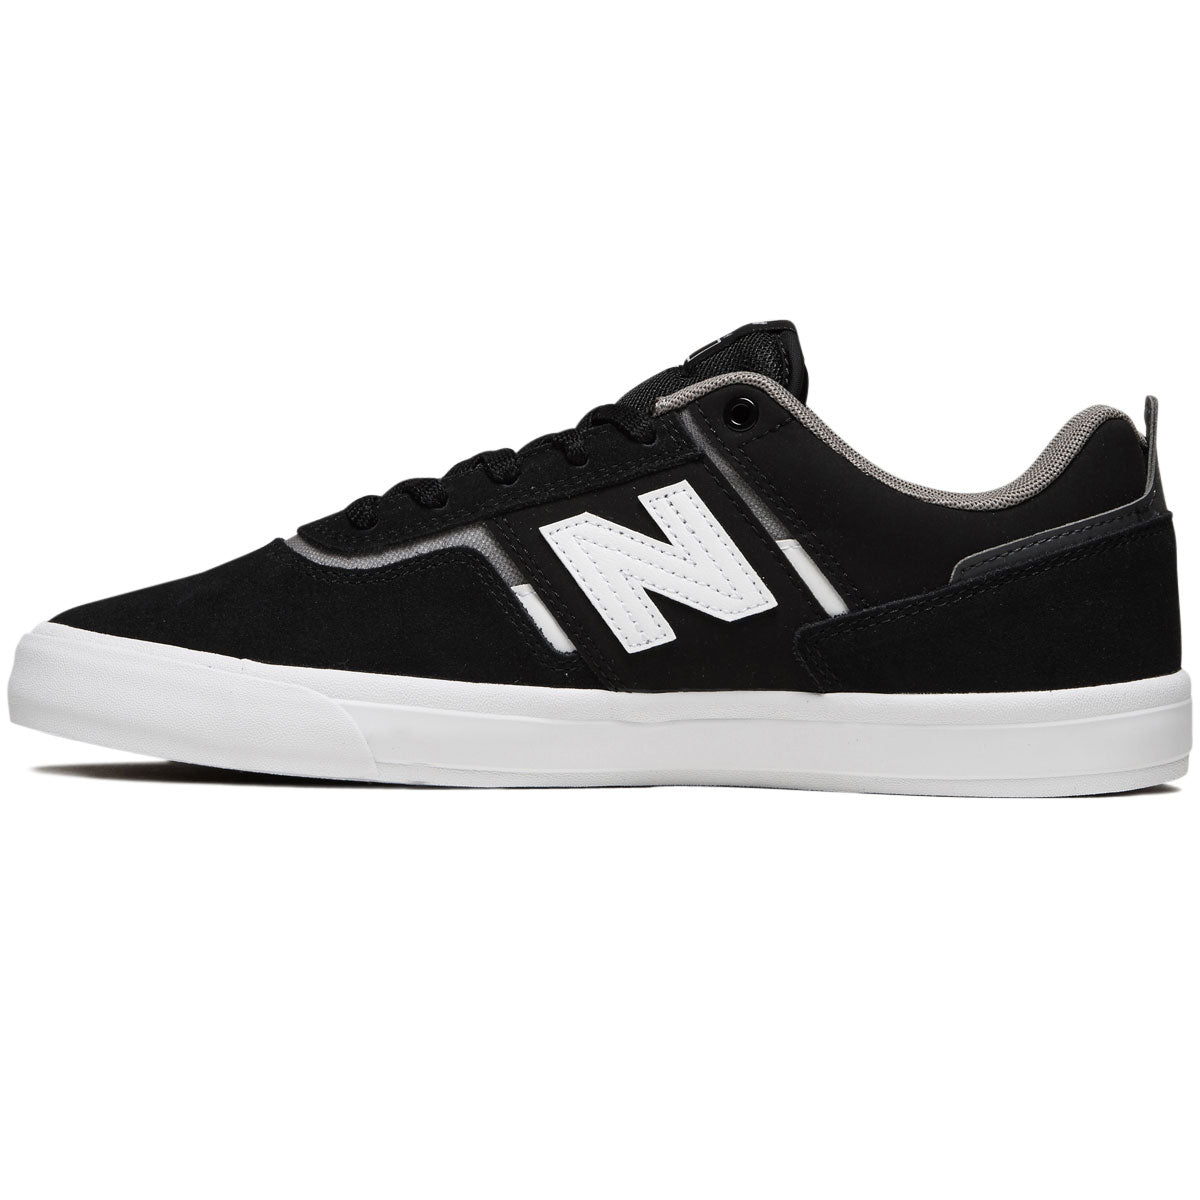 New Balance 306 Foy Shoes - Black/White/Grey image 2